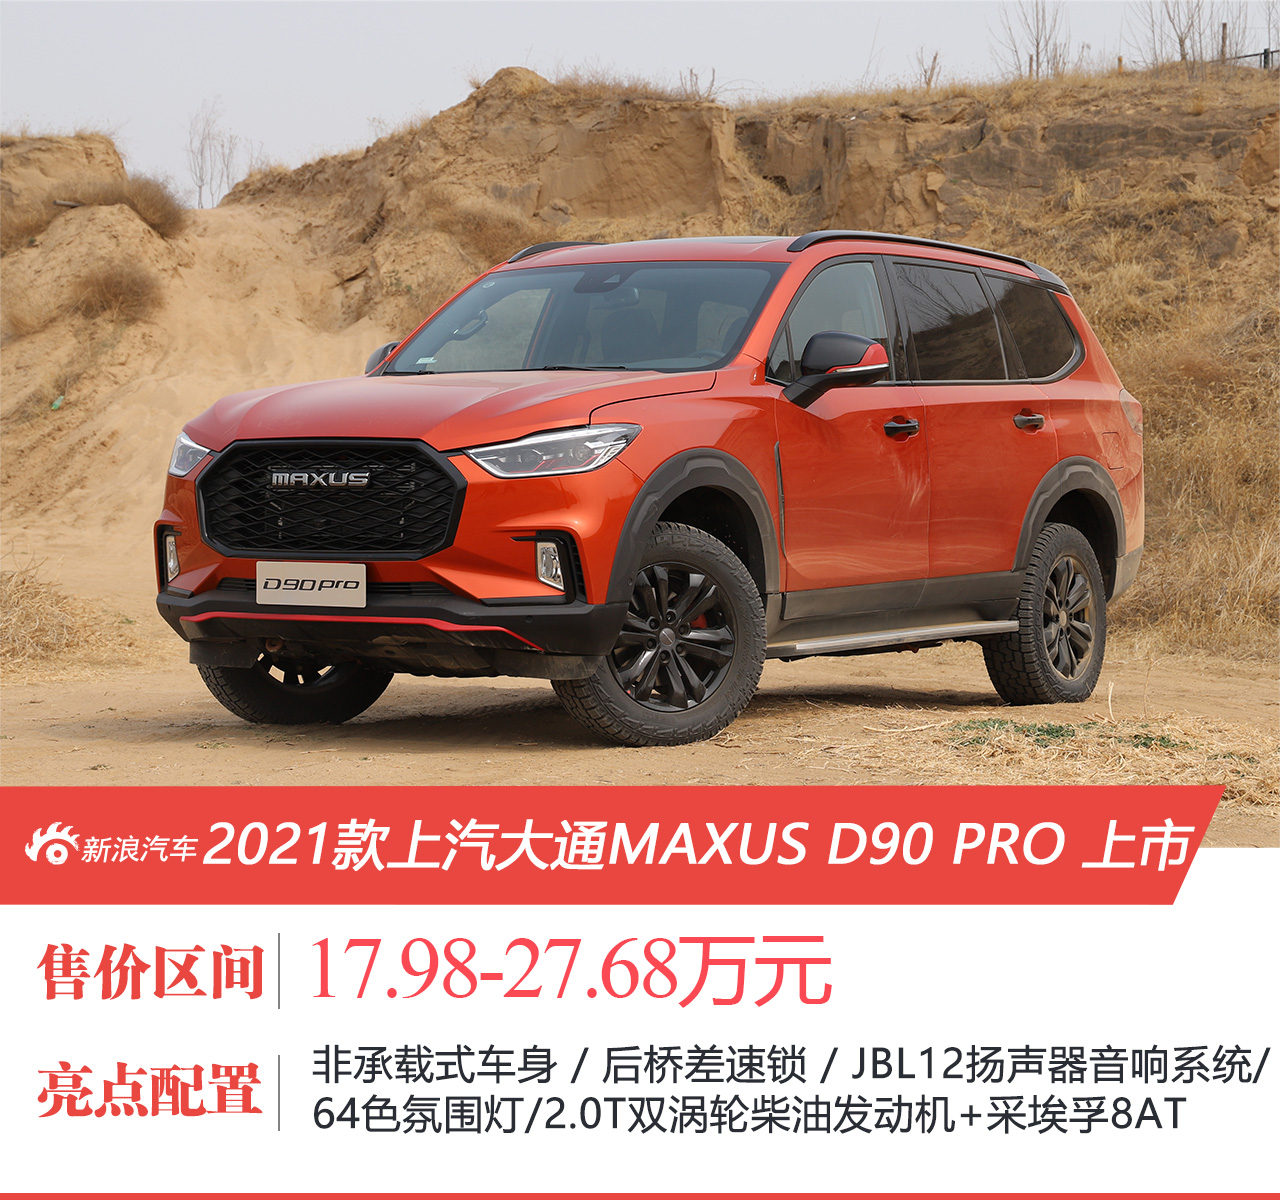 上汽大通MAXUS D90 PRO售17.98-27.68万元上市